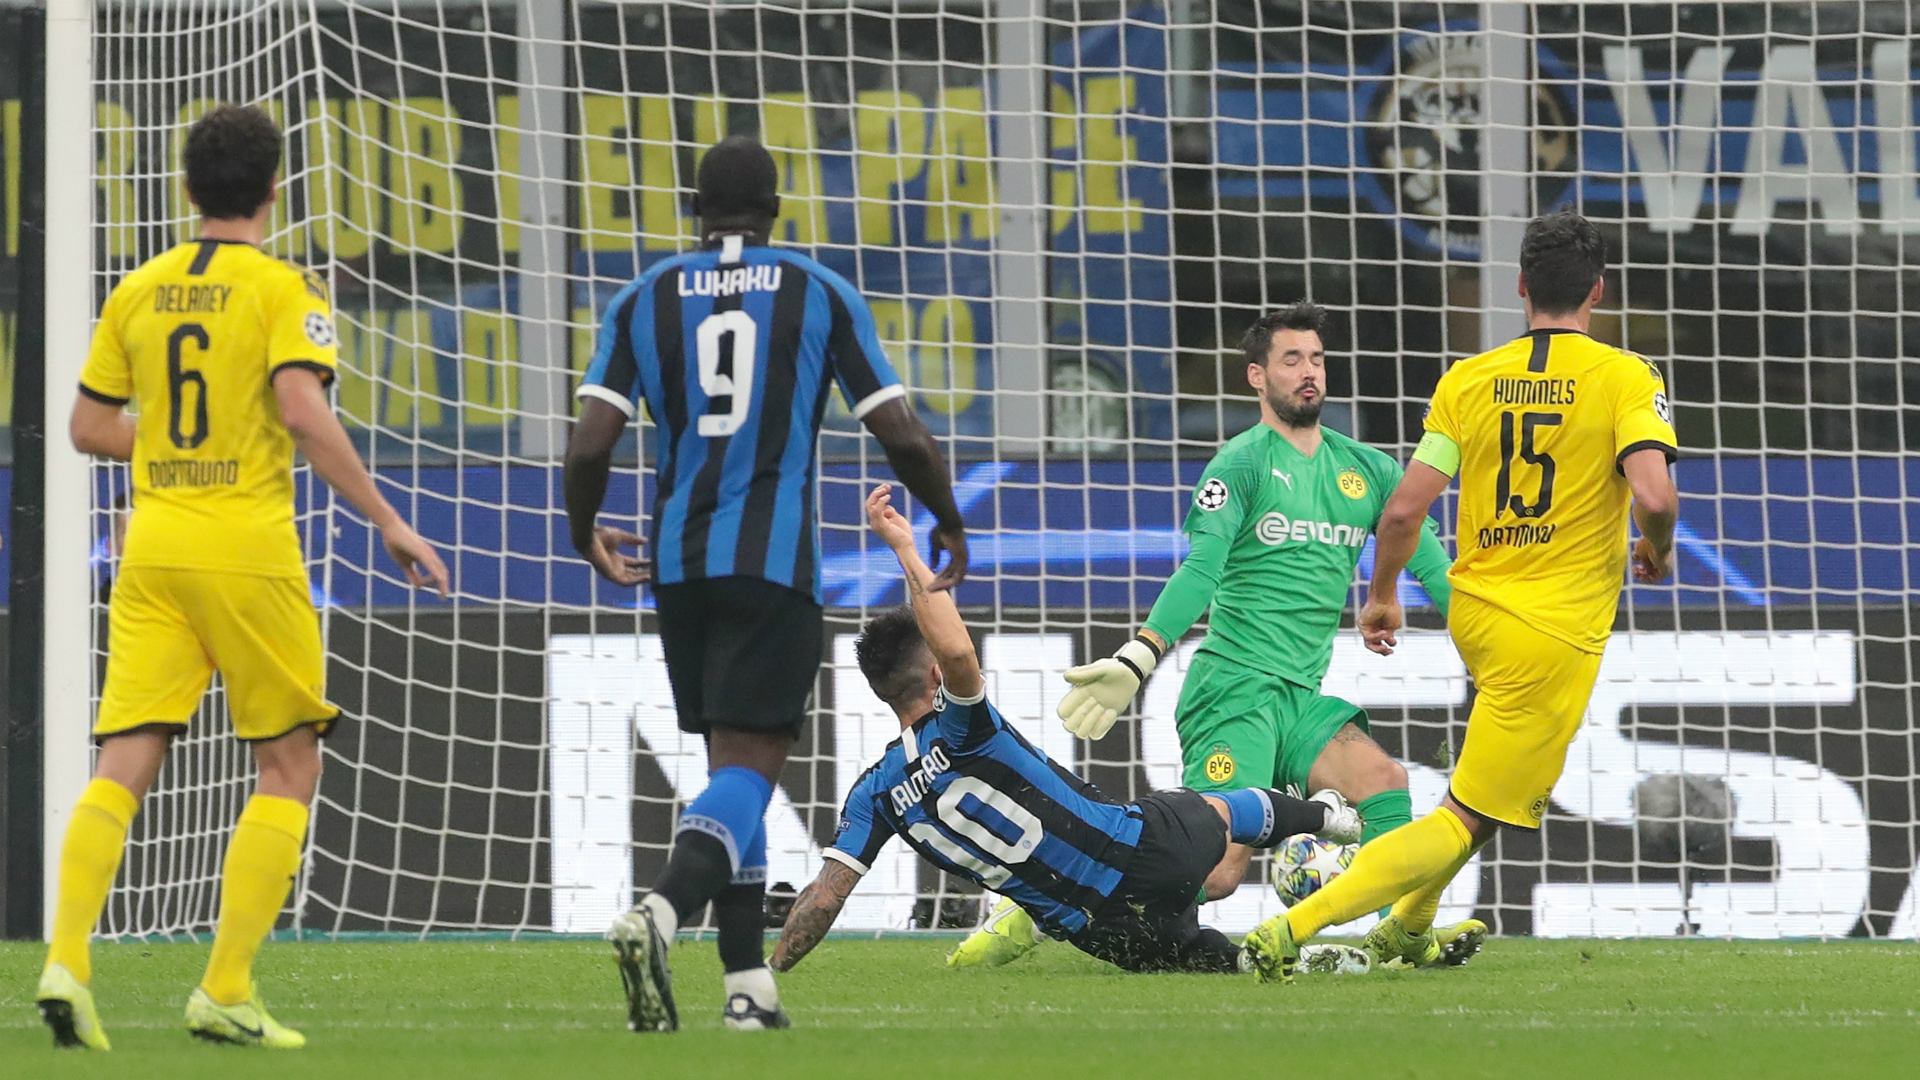 Inter 2-0 Borussia Dortmund: Martinez gives massive boost to Champions League campaign